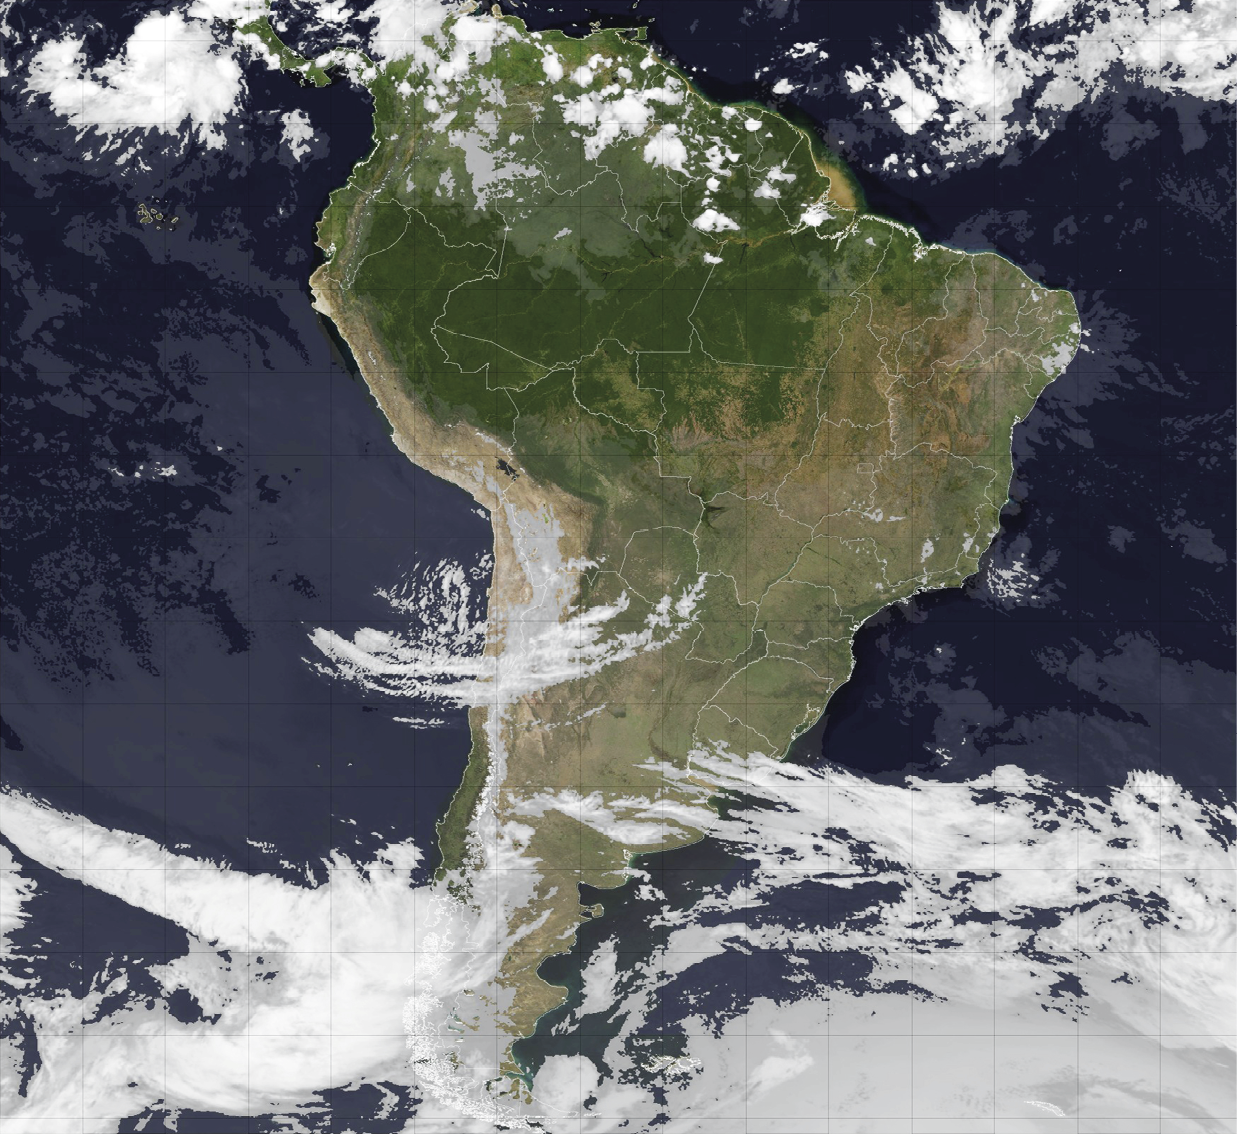 Imagem de satélite.  
Imagem de satélite com destaque para o território da América do Sul no centro, o Oceano Atlântico à direita e Oceano Pacífico à esquerda. Há grande quantidade de nuvens na parte sul da América do Sul, recobrindo trechos do território, e nuvens mais espaçadas ao norte.